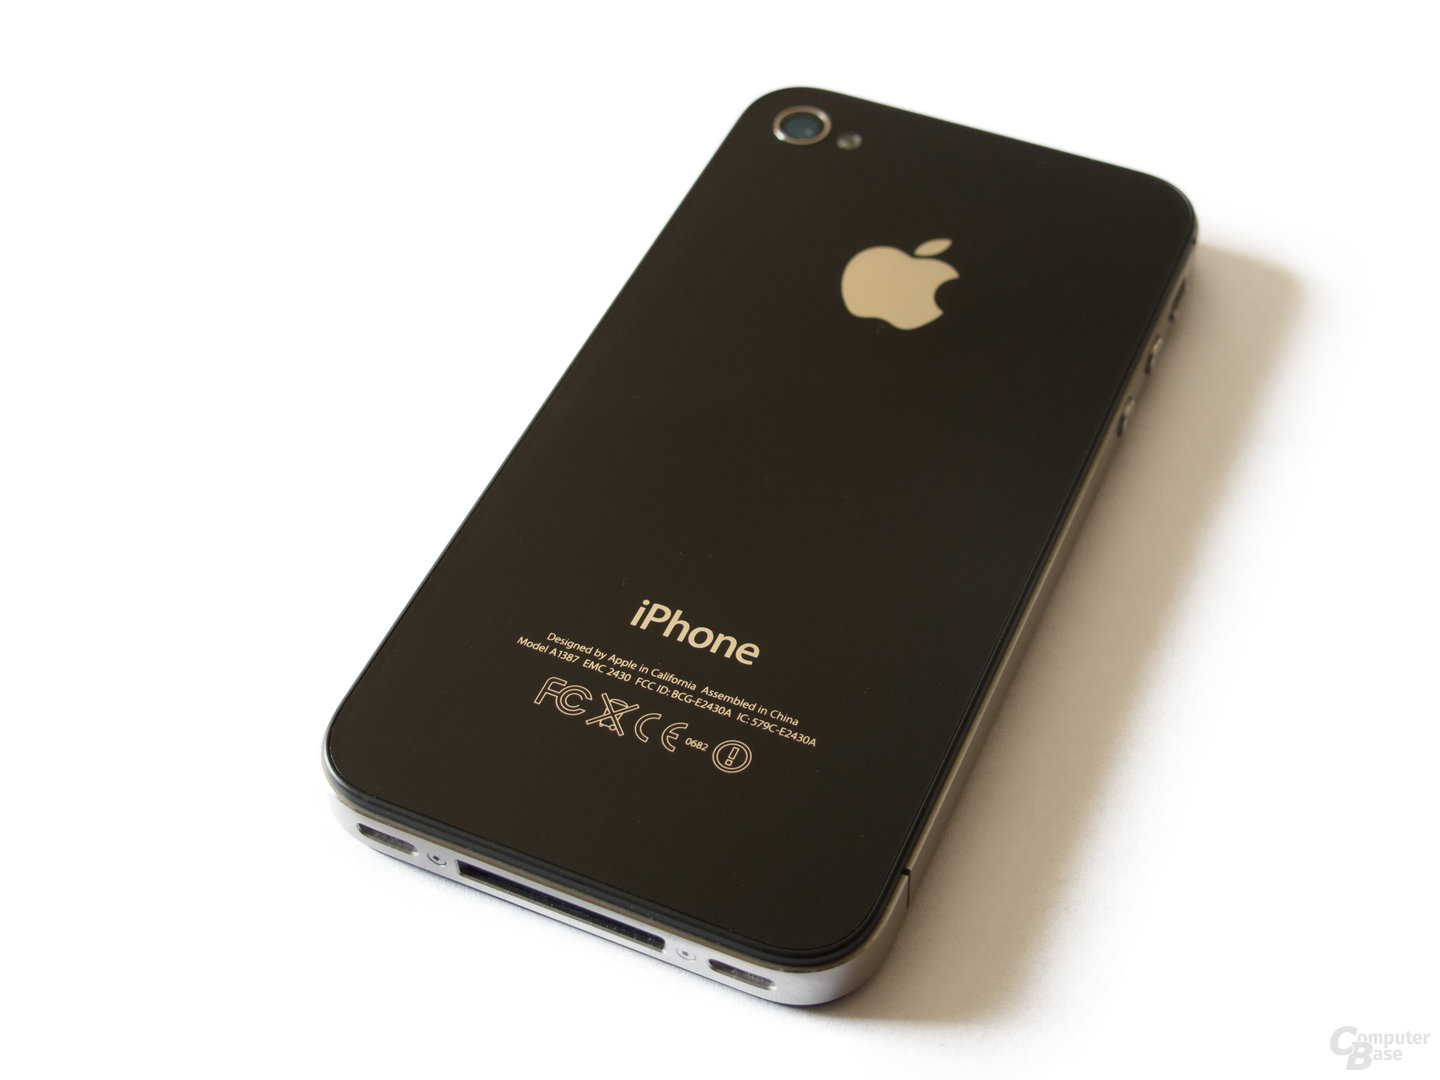 Alles wie gehabt: Die Rückseite des iPhone 4S